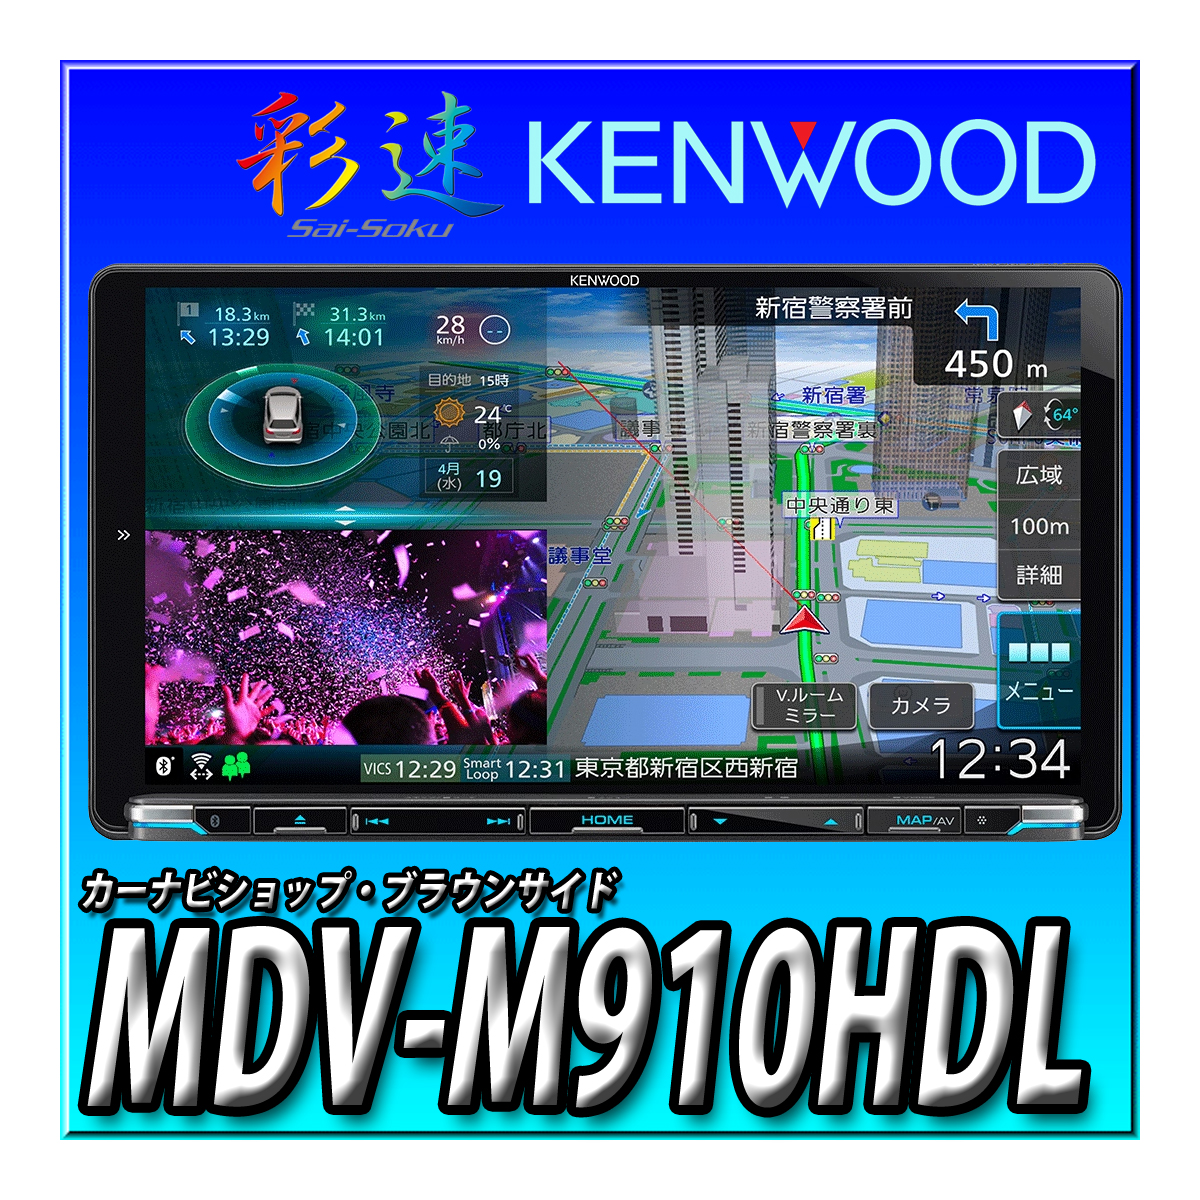 楽天市場】MDV-S710W ケンウッド カーナビ 彩速 7インチワイド 安心の 